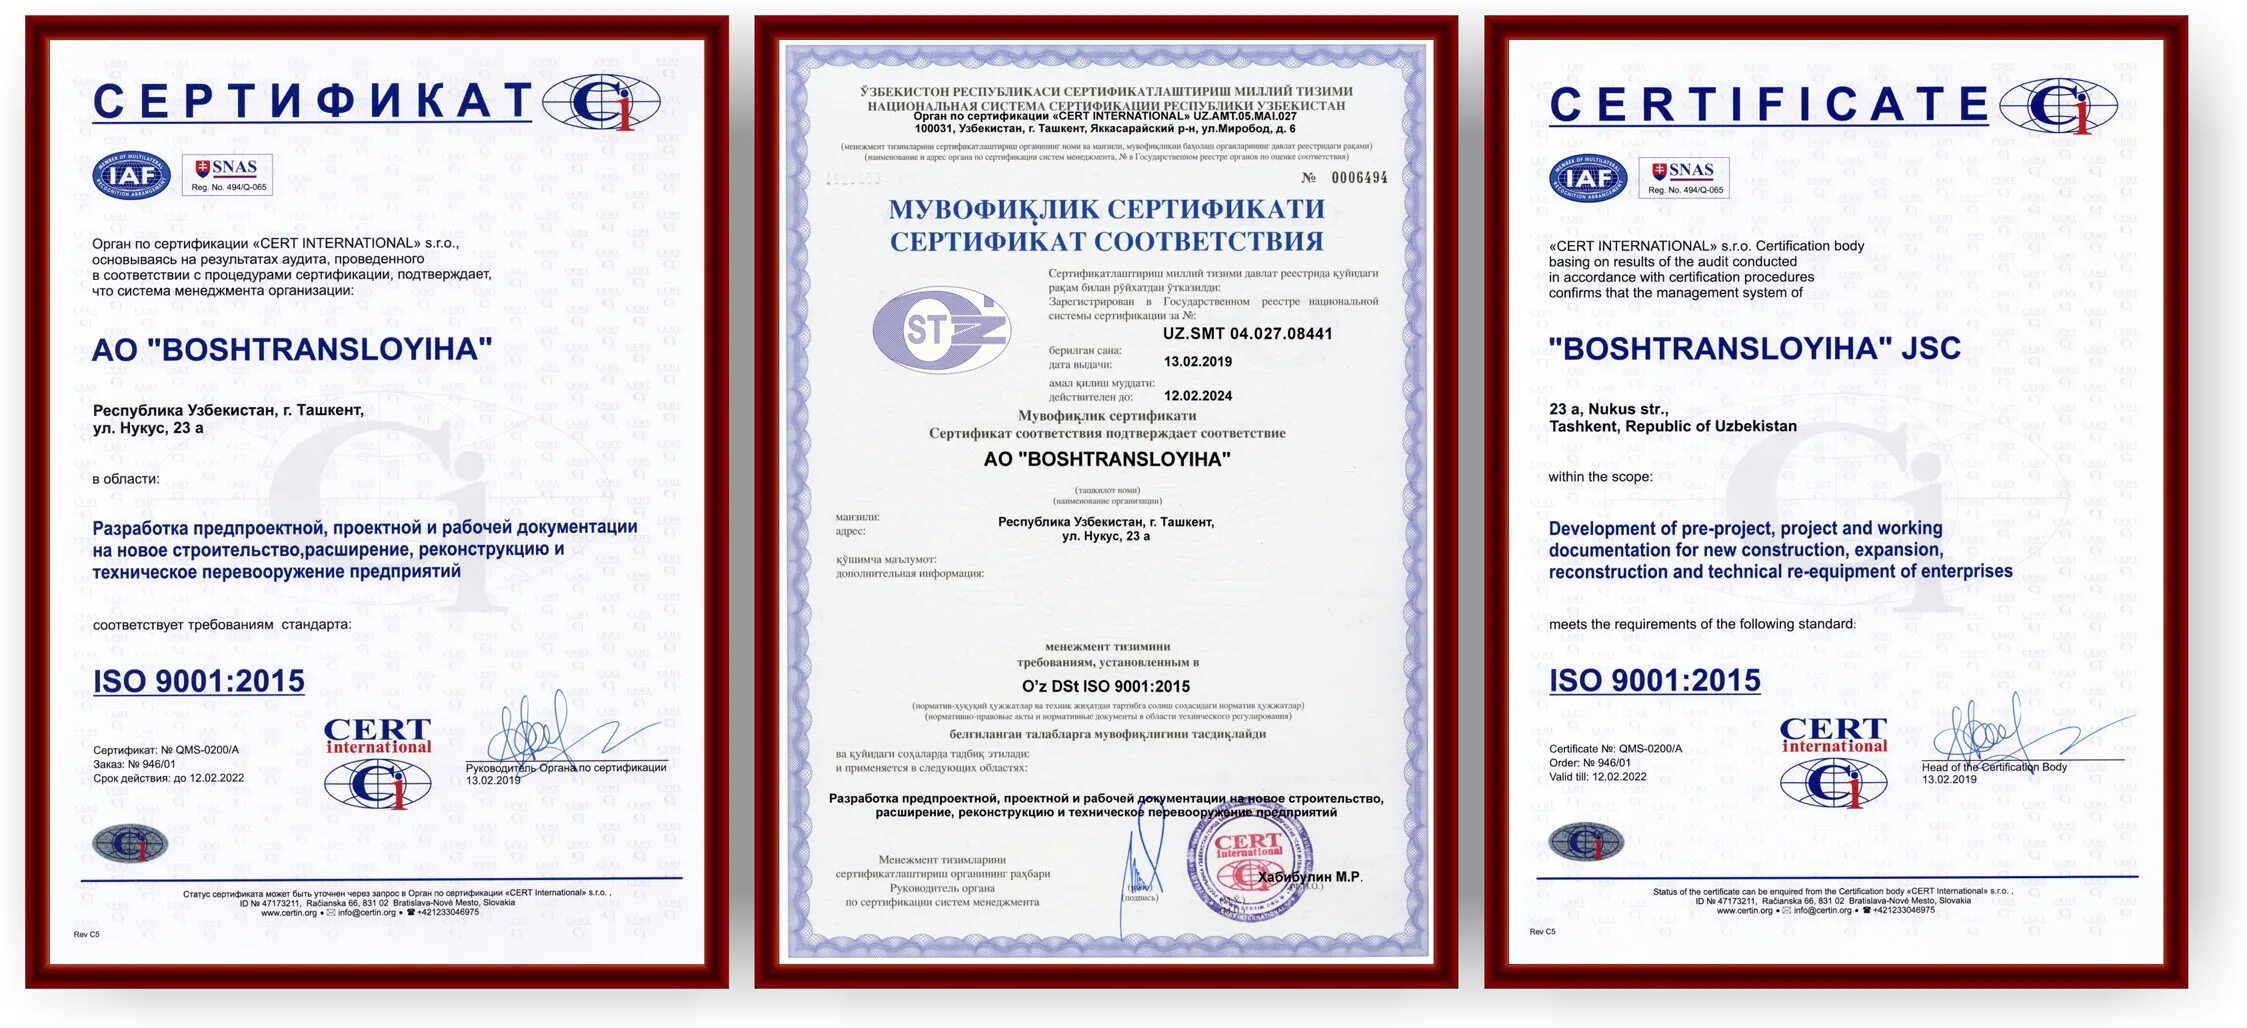 Сертификат ГОСТ Р ИСО 9001. TDM Electric ISO 9001. Сертификат СМК ИСО 9001. Сертификат качества ISO 9001 2000. Документы международных соответствий